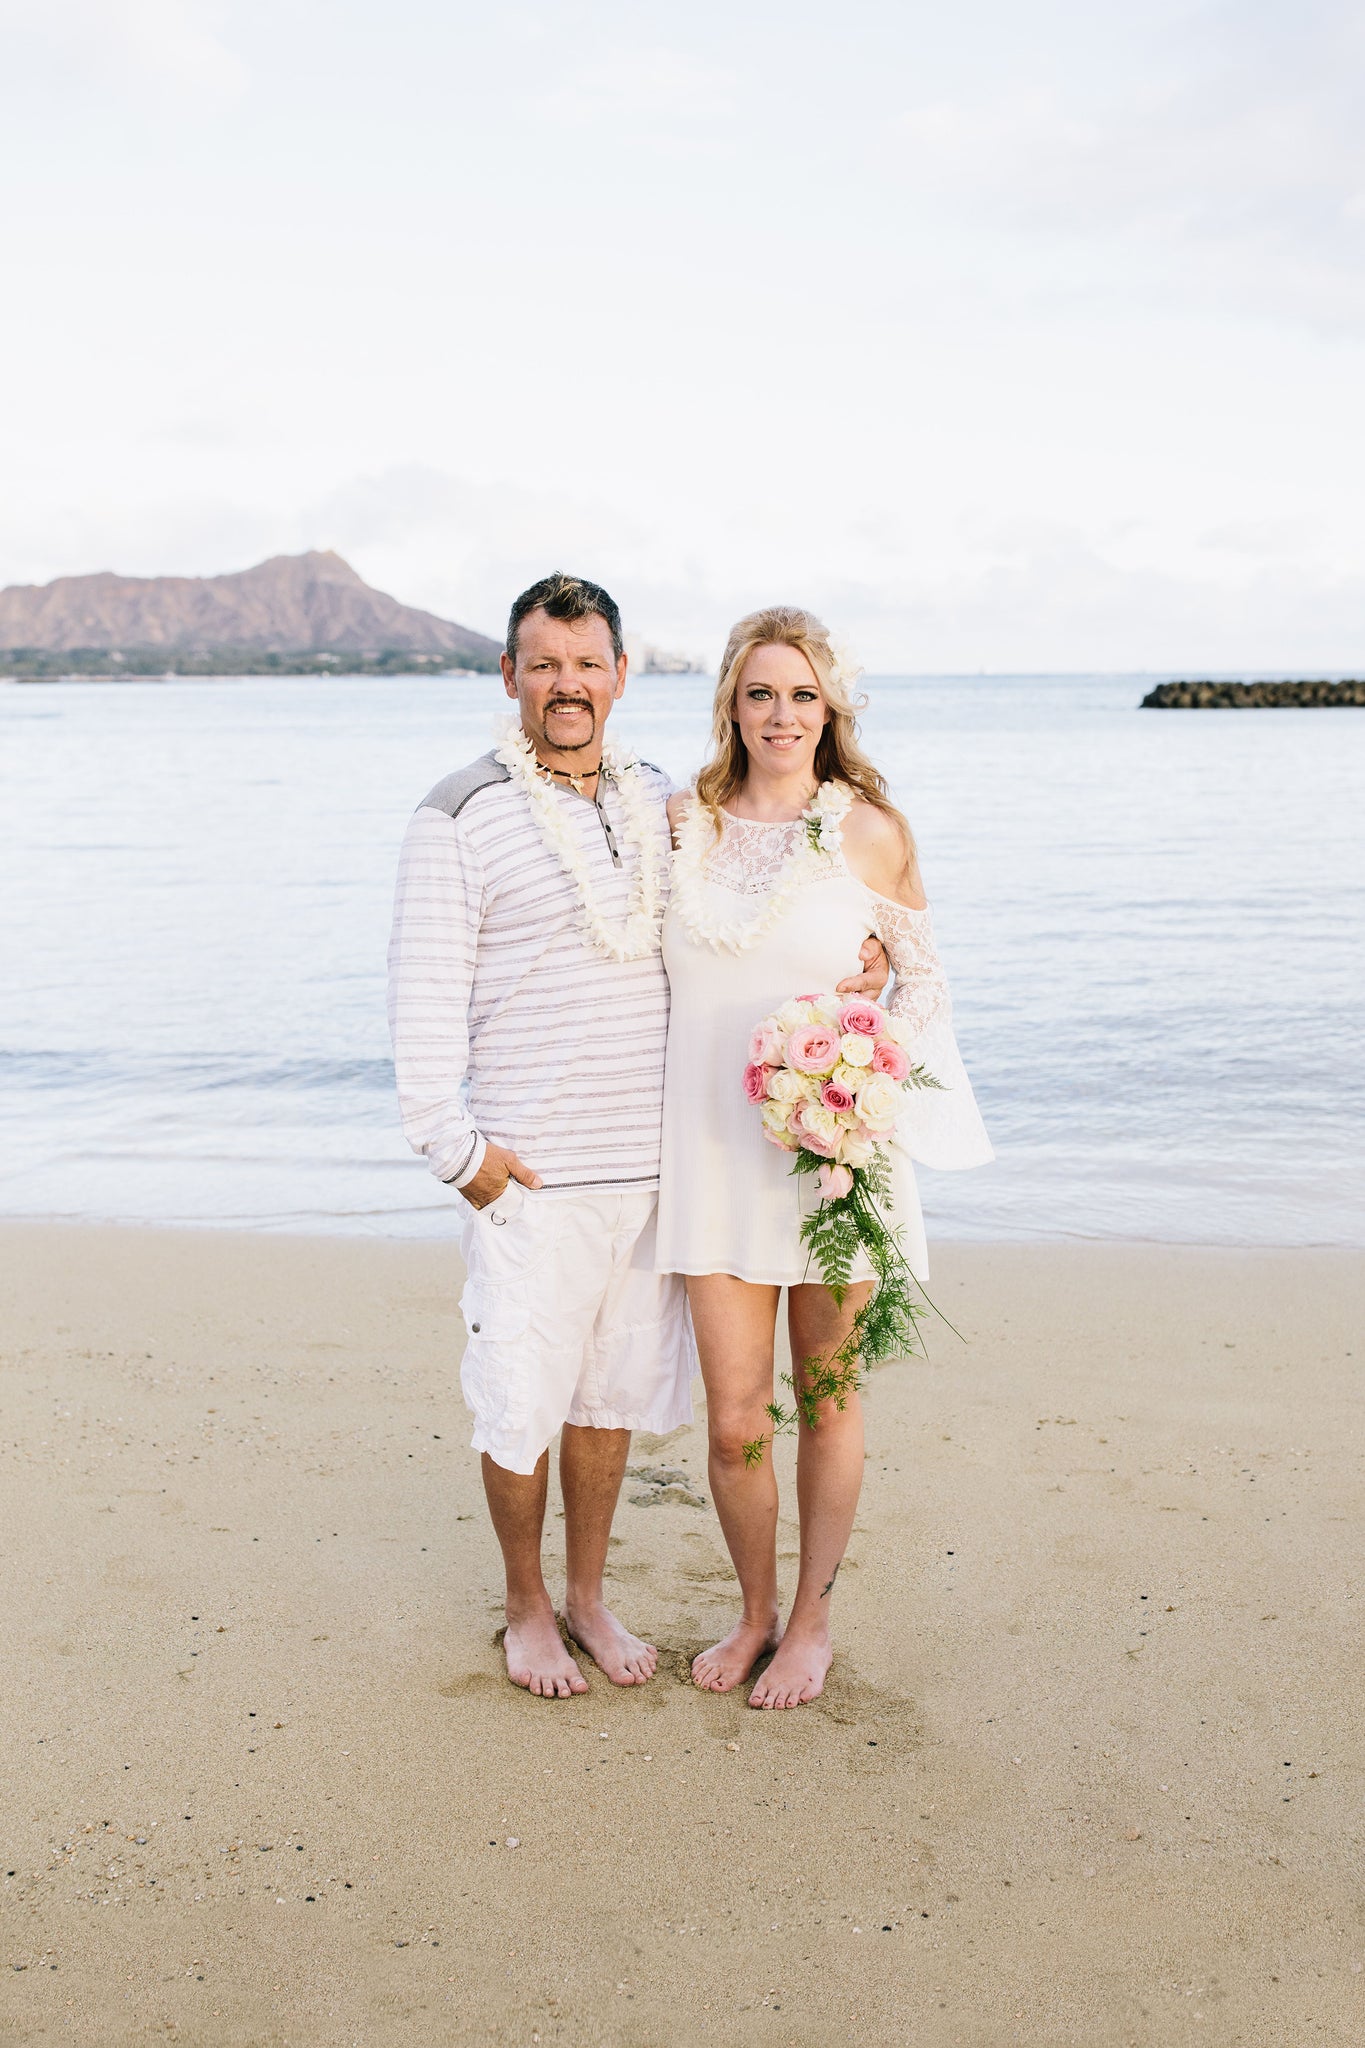 Bride and Groom Marry on Duke Kohanamoku Beach in Waikiki, Oahu, Hawaii